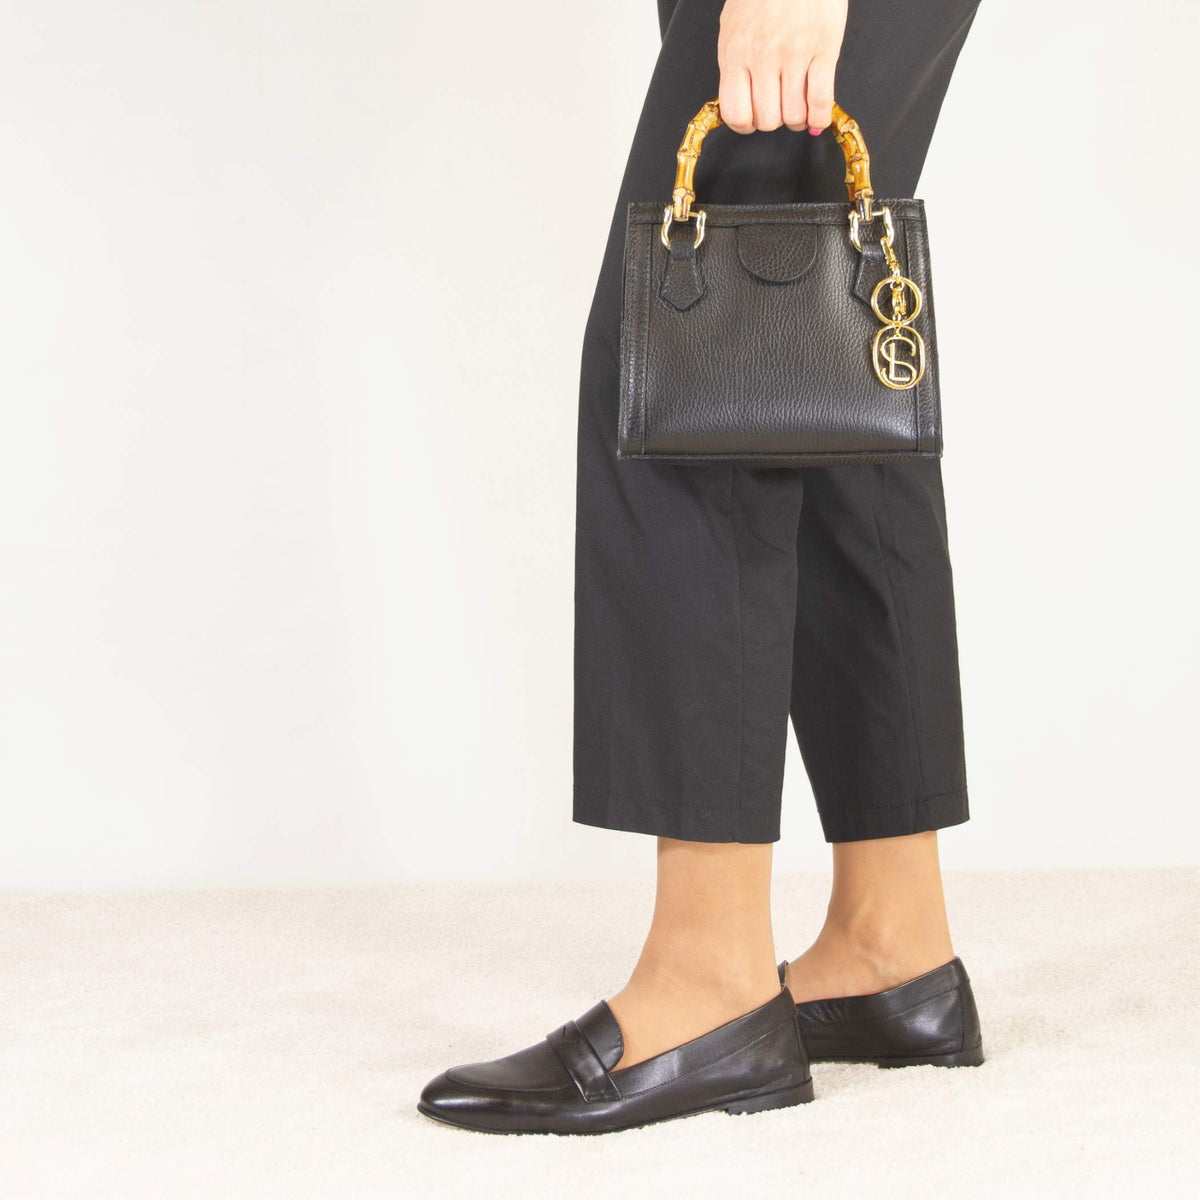 Schwarze Leder-Mini-Bambus-Handtasche für Frauen mit Holzgriffen und Schulterriemen